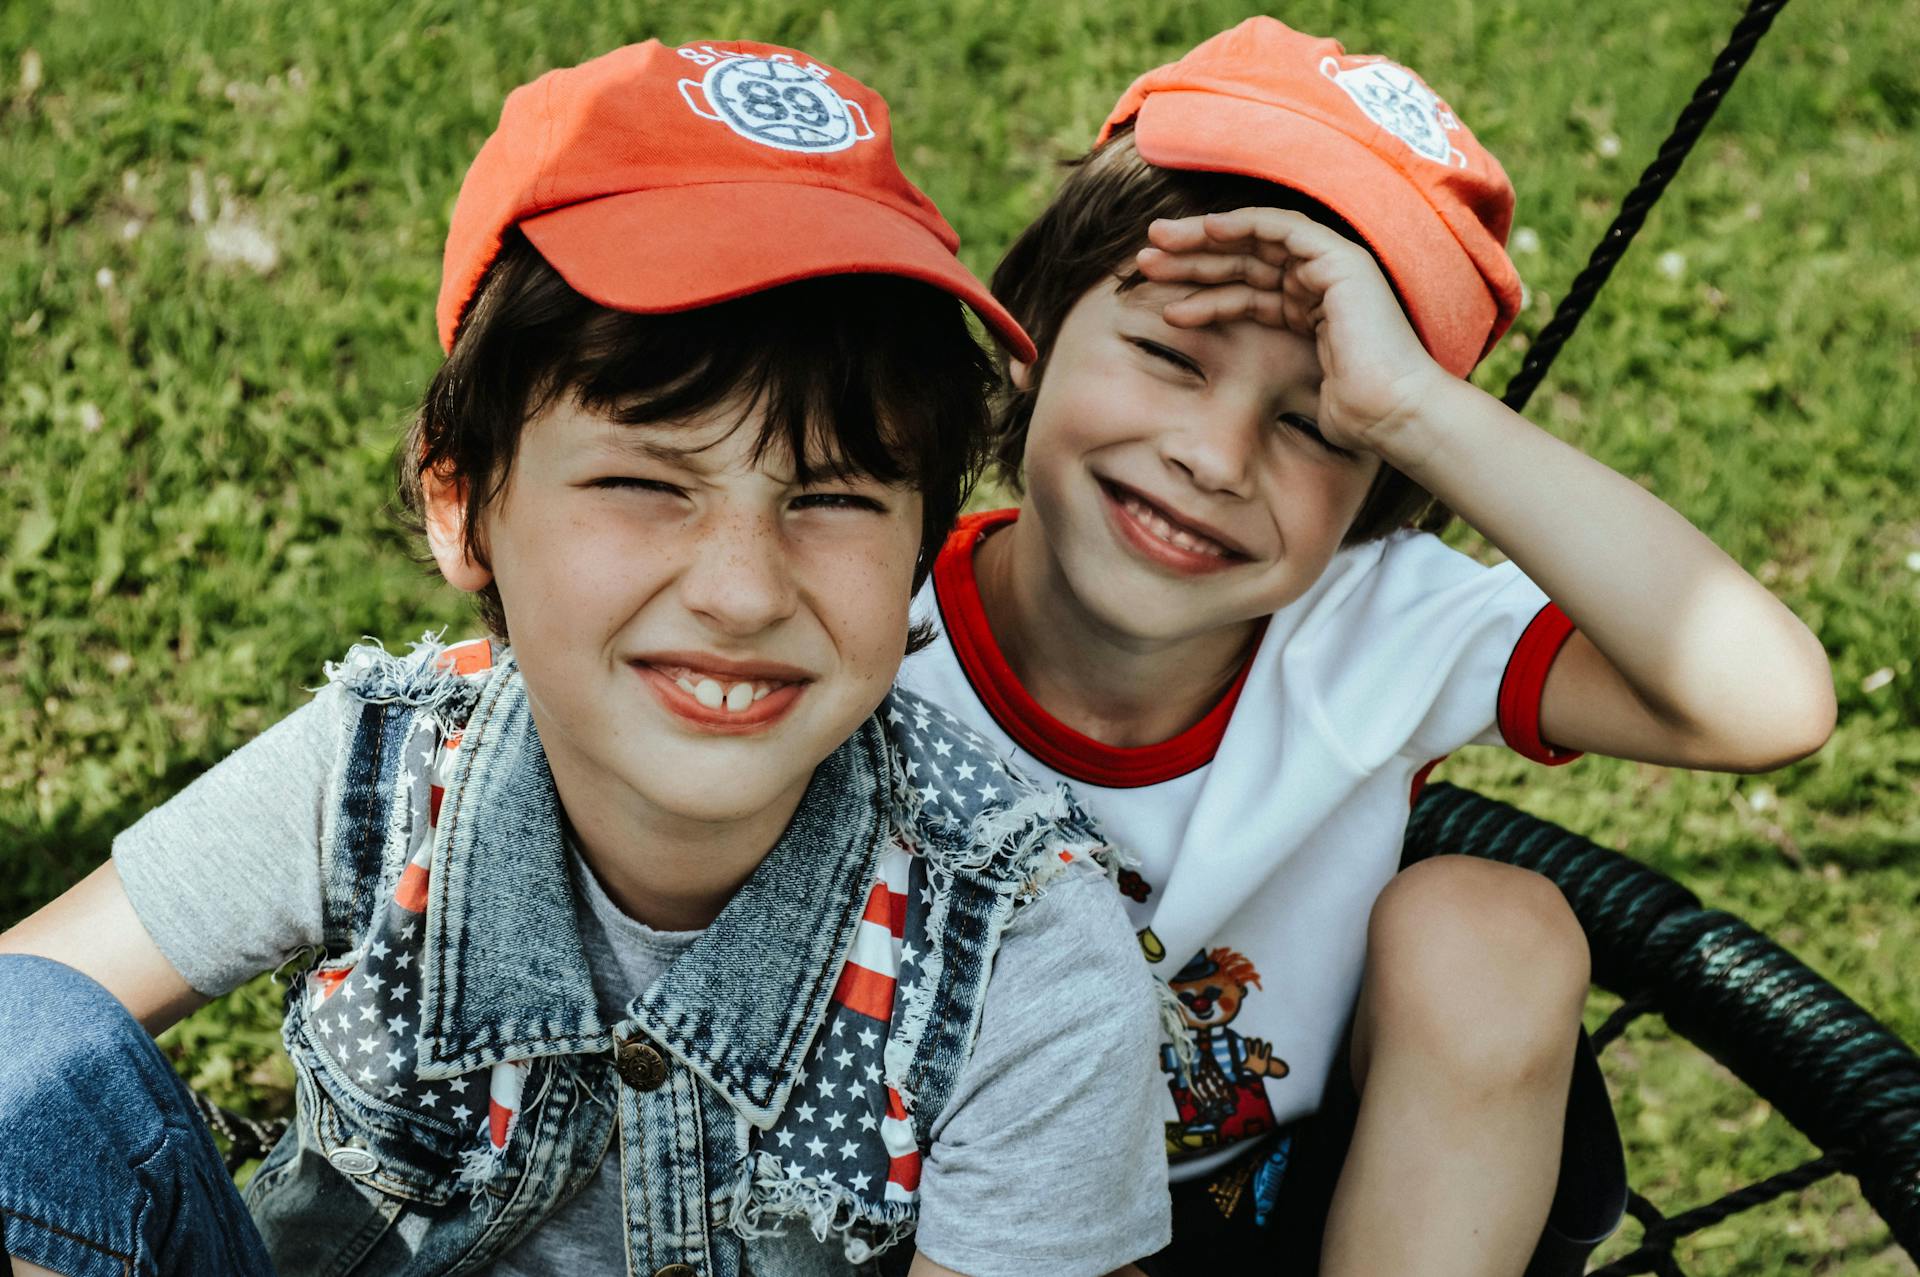 Deux garçons jumeaux souriants | Source : Pexels